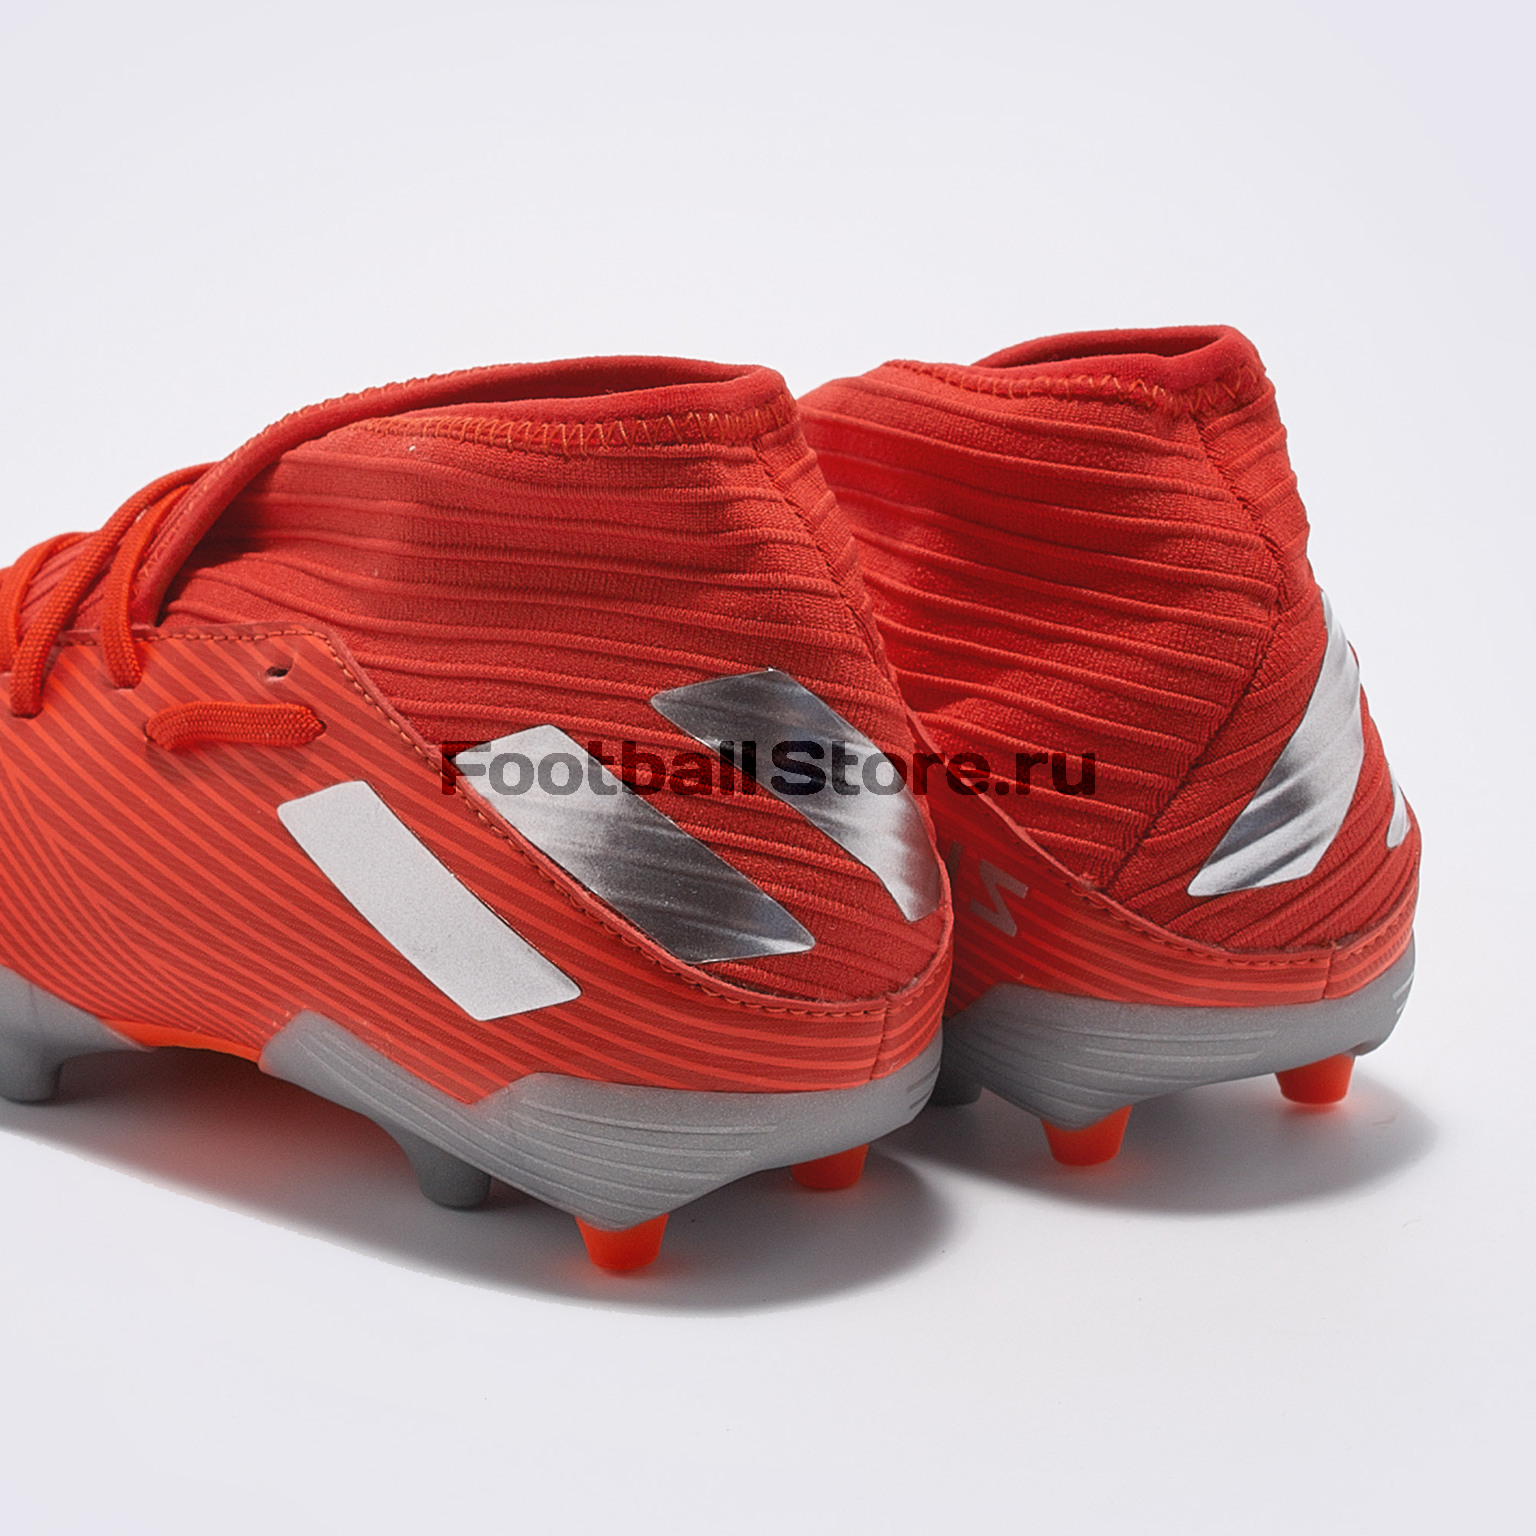 Бутсы детские Adidas Nemeziz 19.3 FG F99951 